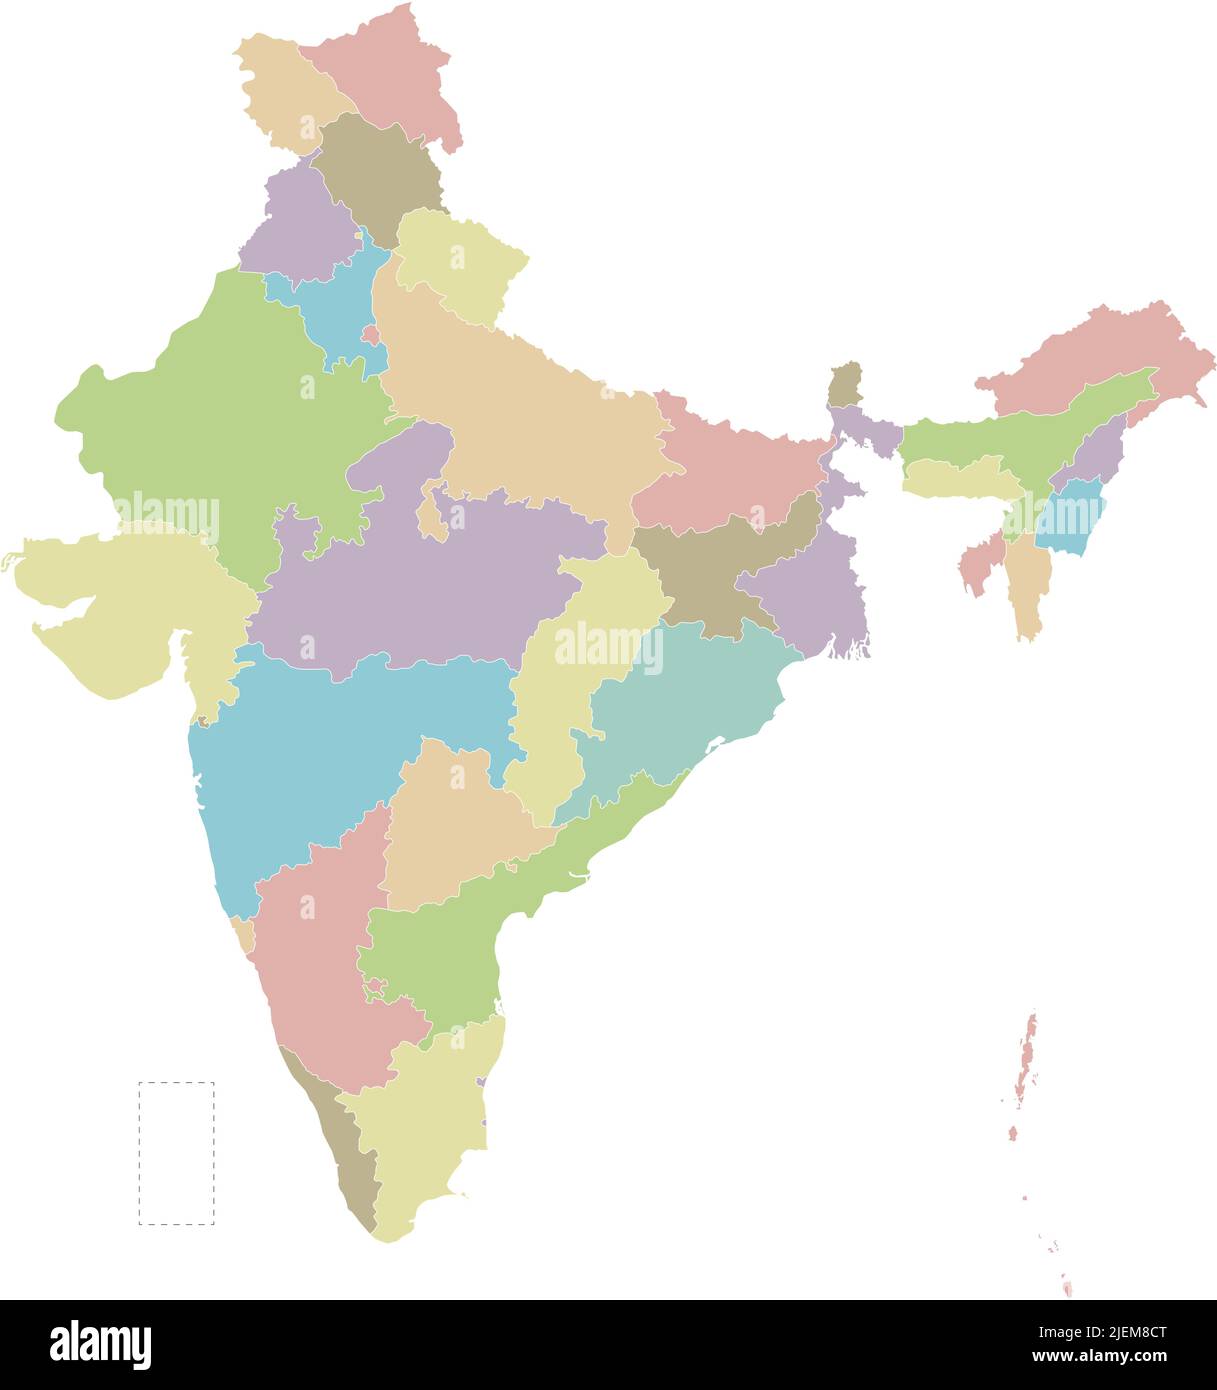 Mapa vectorial en blanco de la India con estados y territorios y divisiones administrativas. Capas editables y claramente etiquetadas. Ilustración del Vector